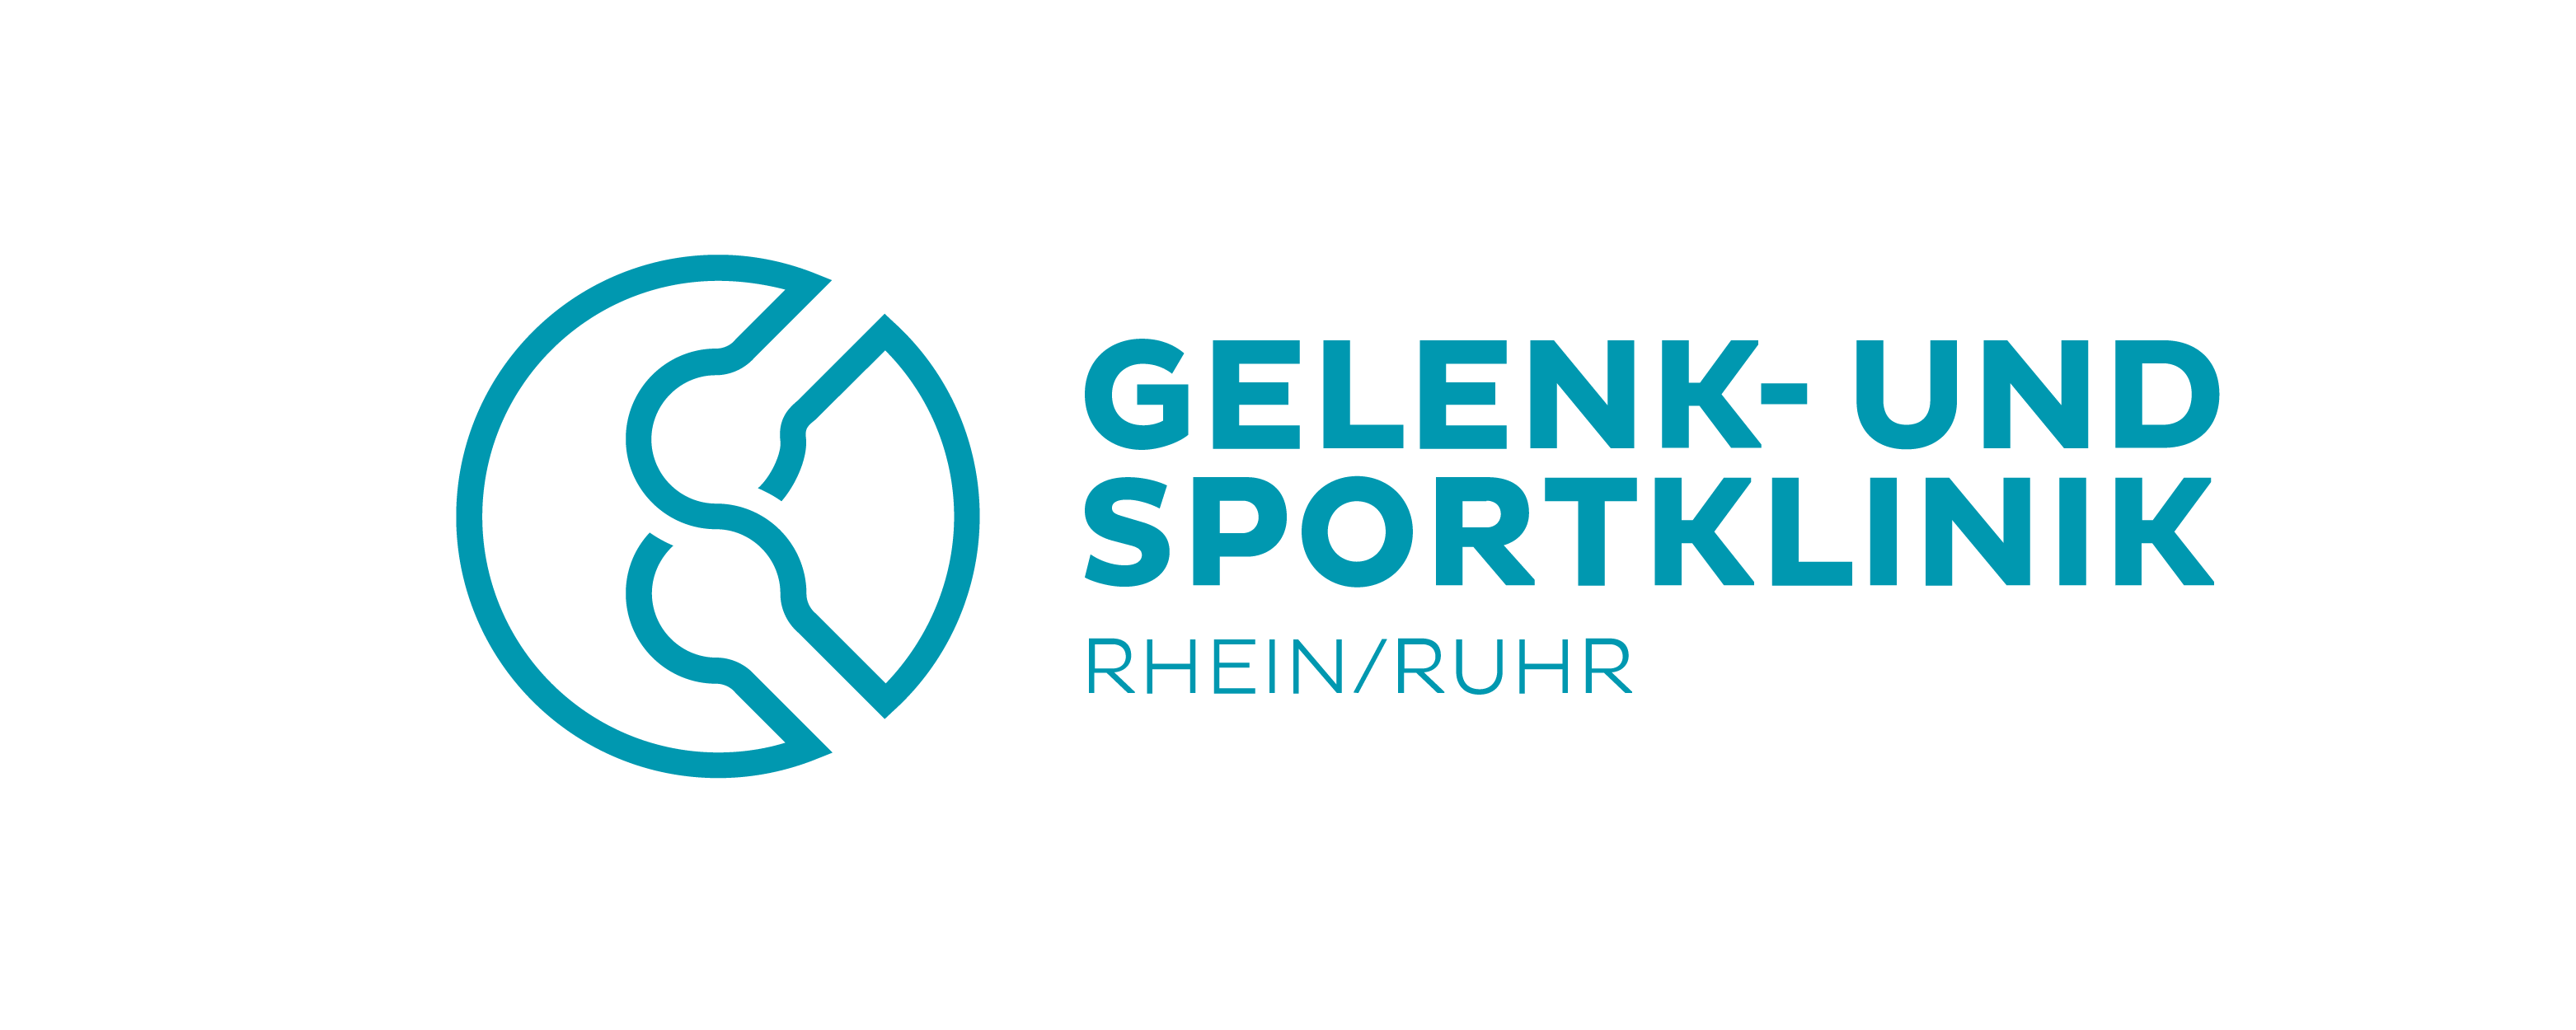 Neuer Sponsor: GSK Rhein/Ruhr